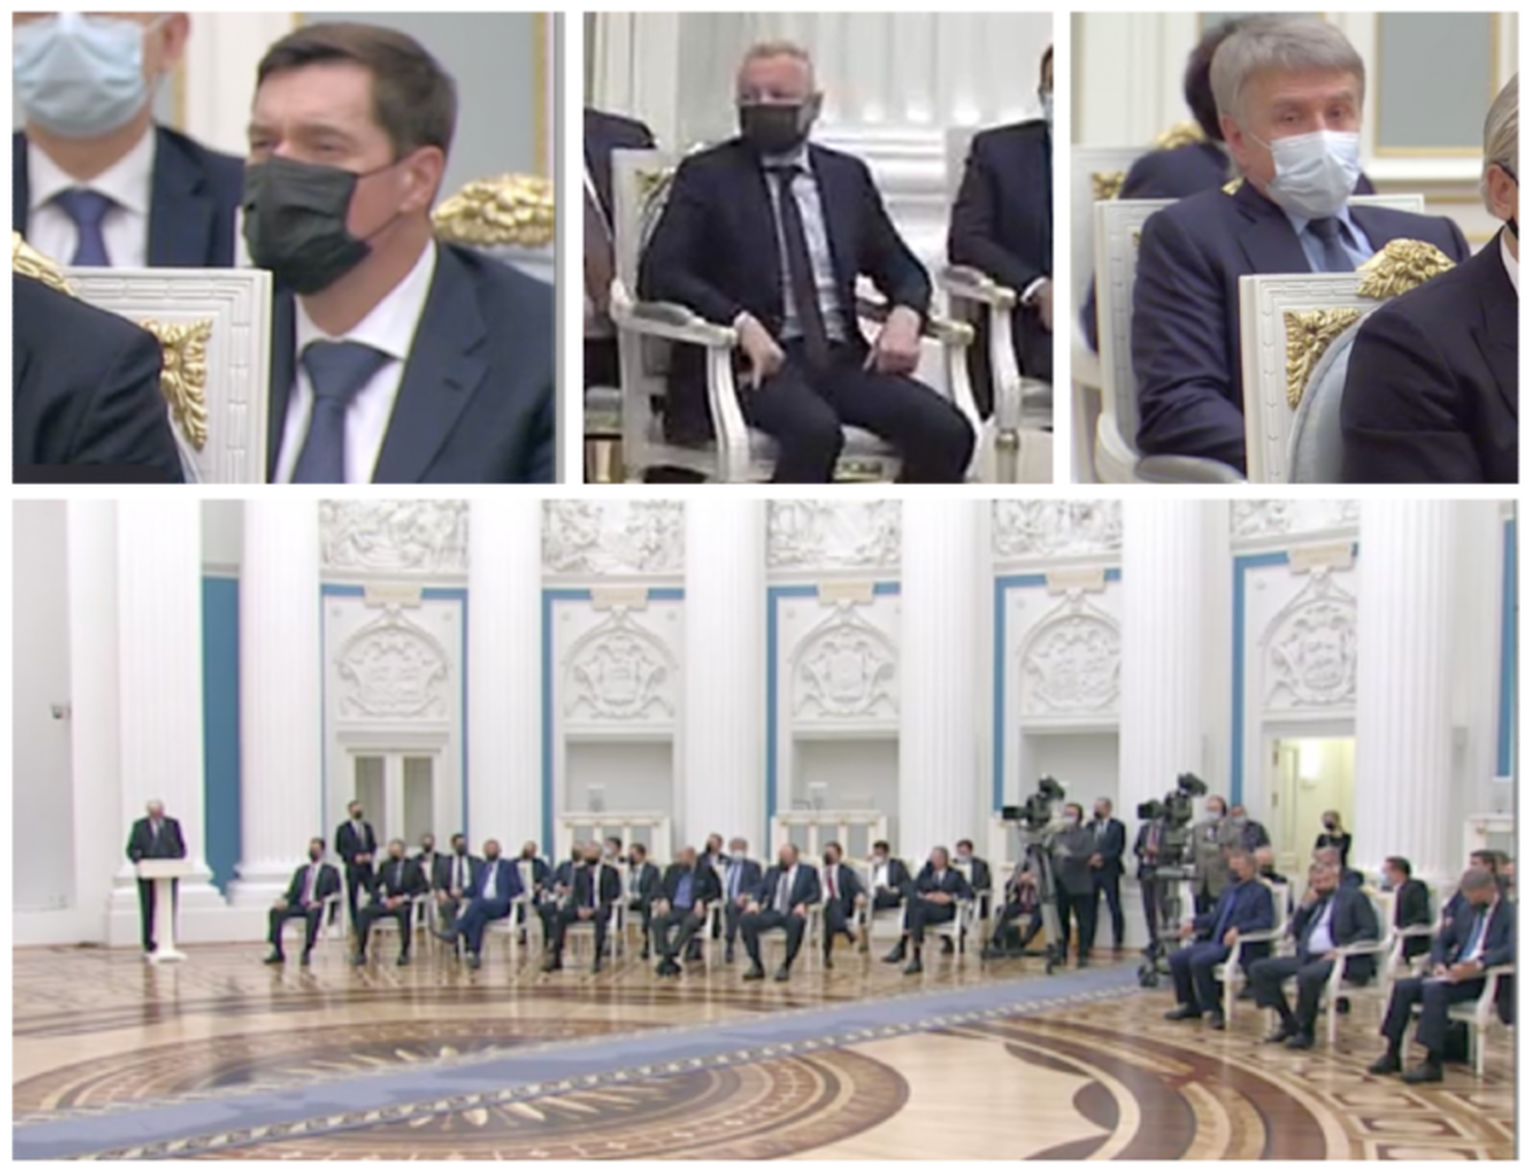 Krievijas oligarhi audiencē pie Vladimira Putina pāris stundu pēc paziņojuma par Krievijas iebrukumu Ukrainā. Viņu vidū arī Aleksejs Mordašovs, Dmitrijs Mazepins un Leonīds Mikhelsons.